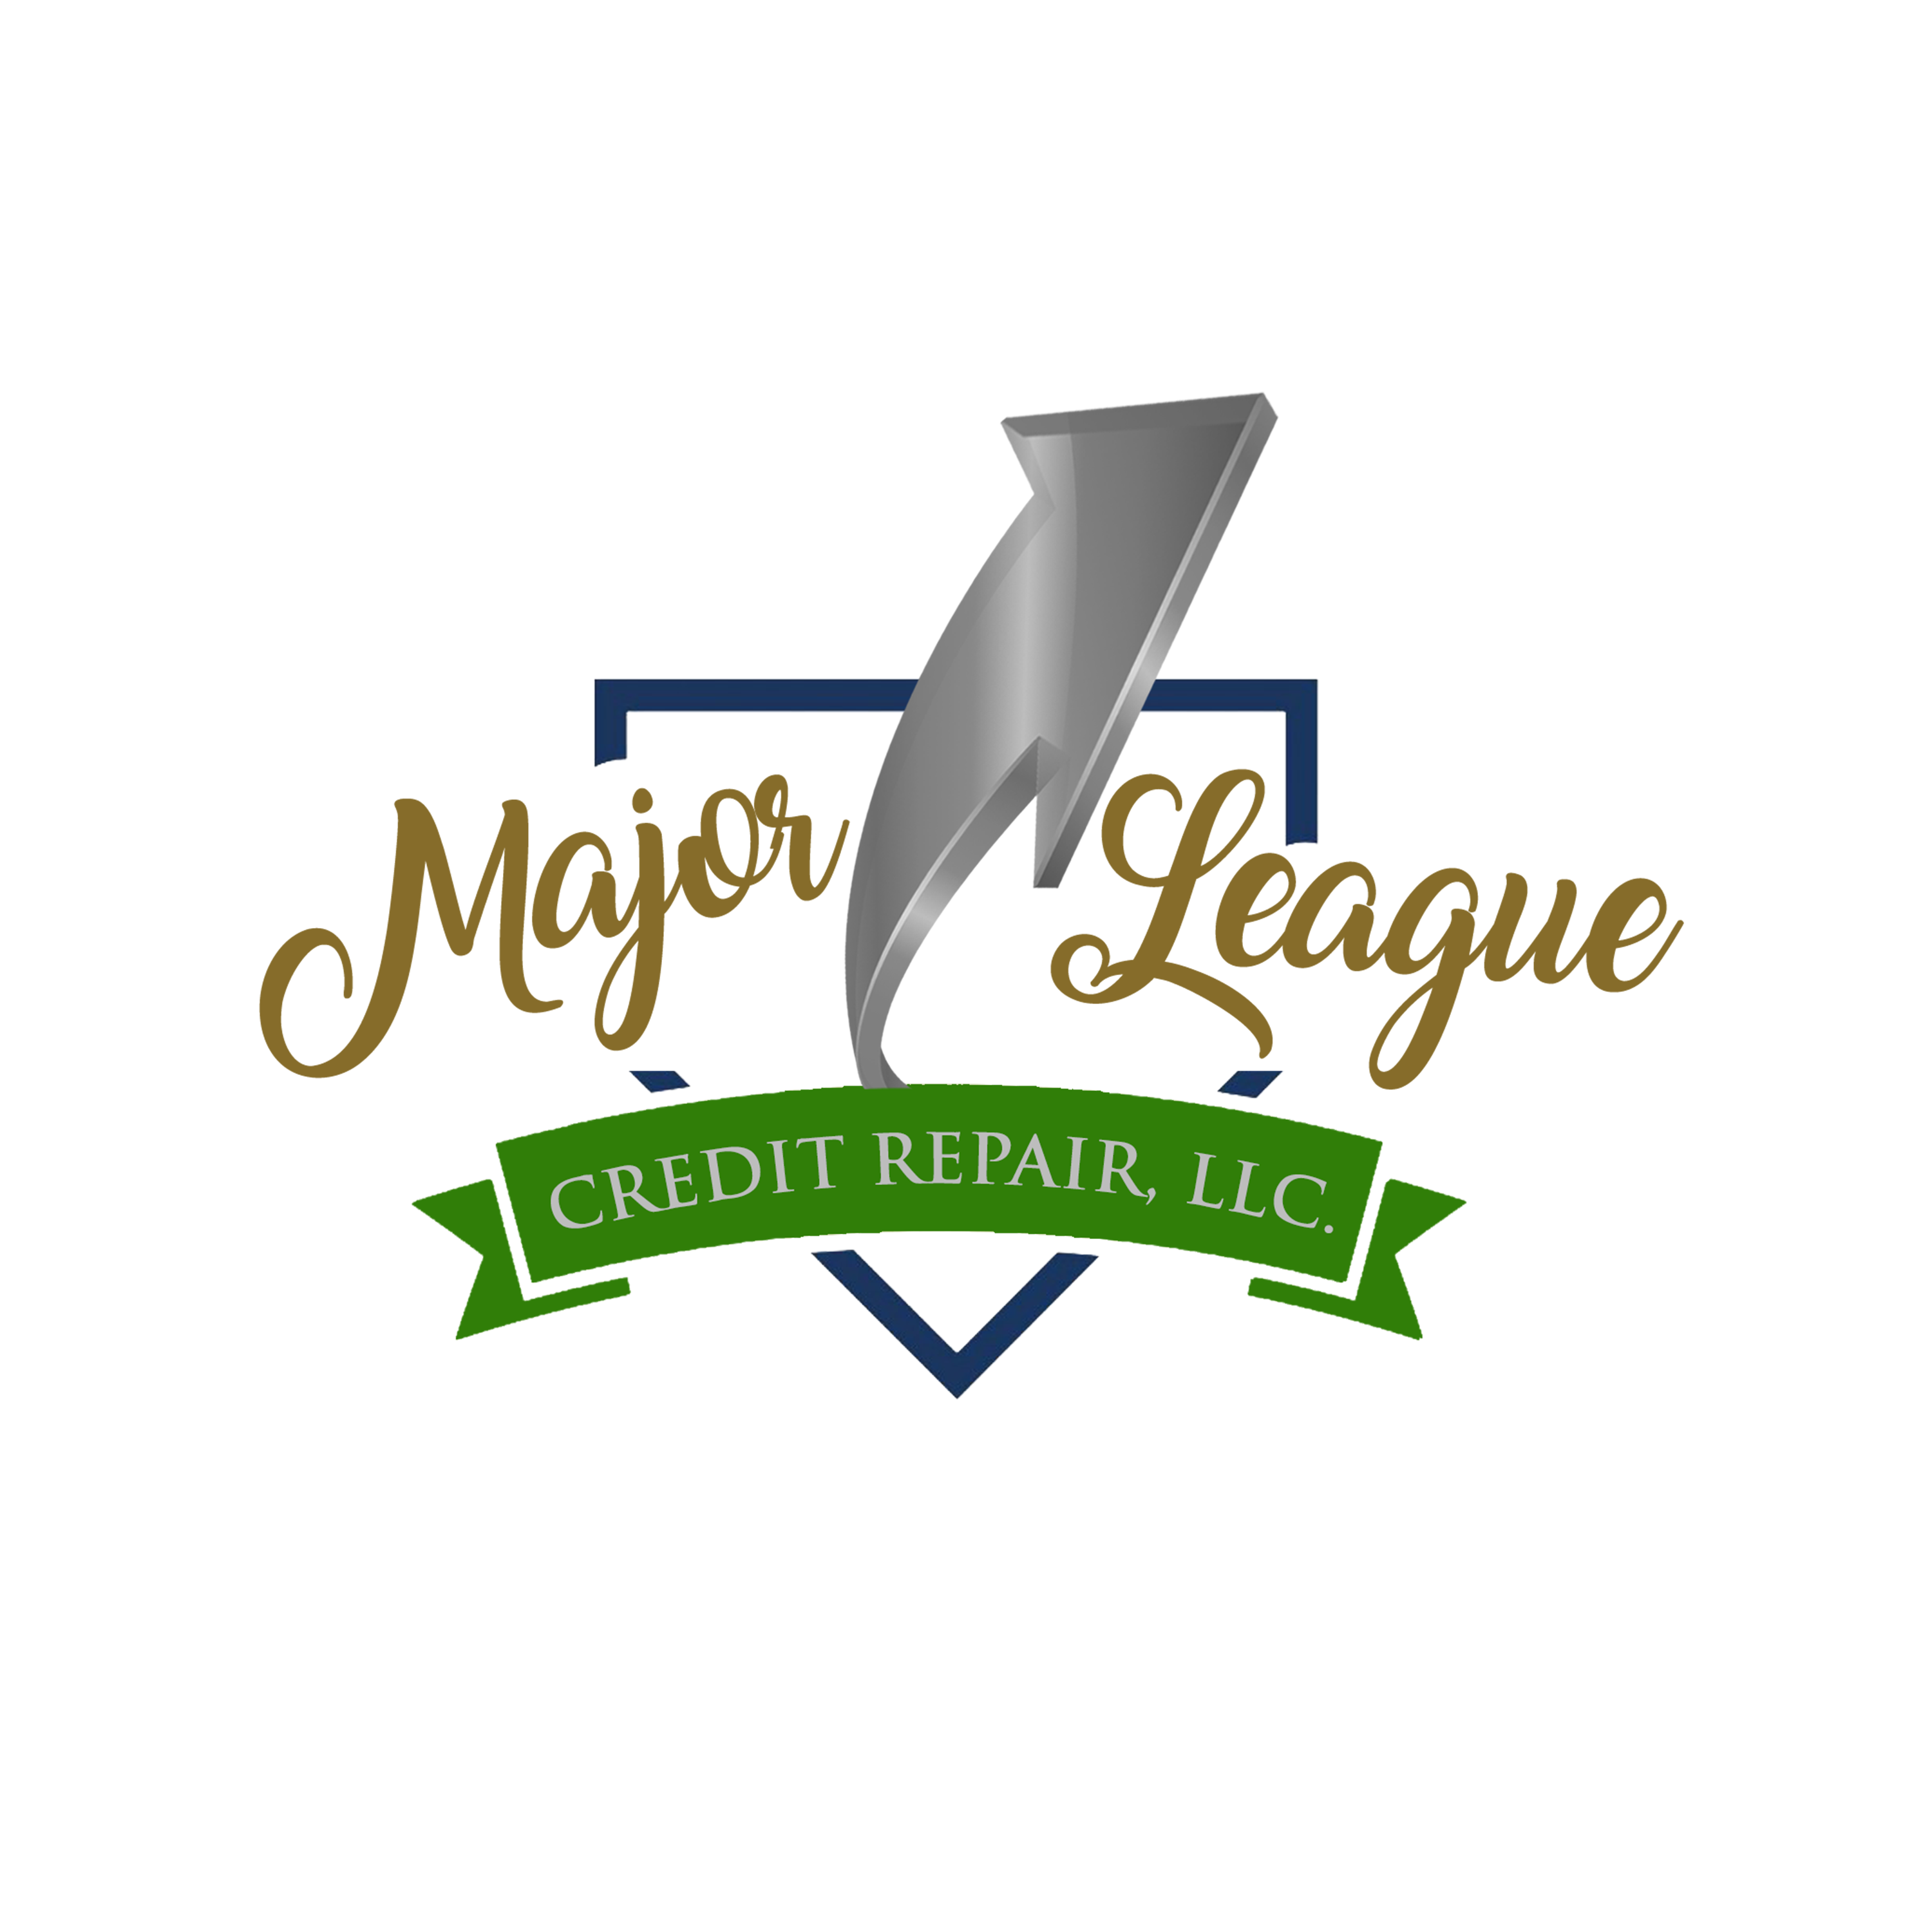 Major League Credit Repair, LLC Photo